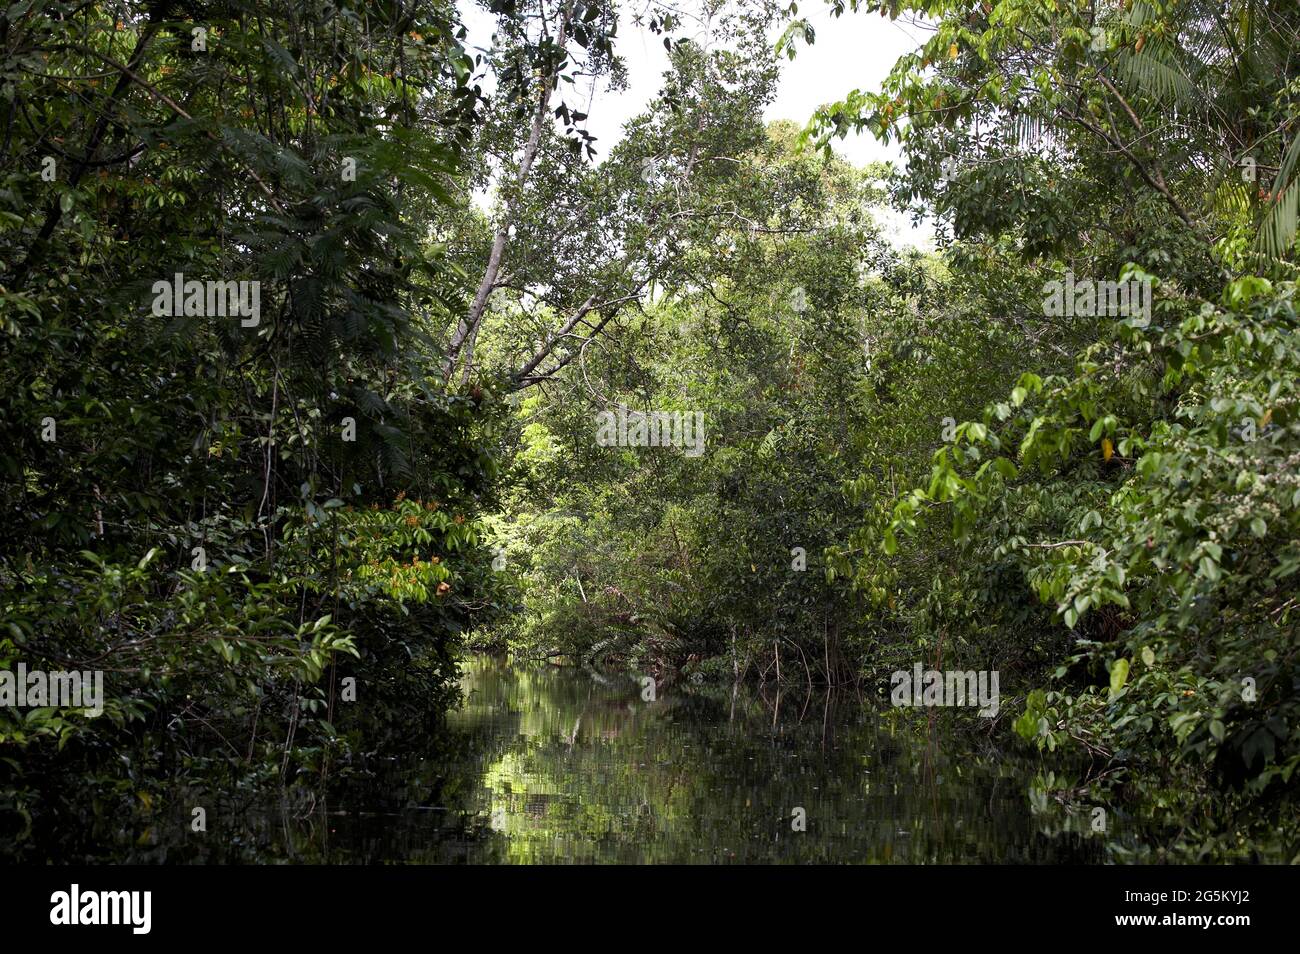 River and forest in the Orinoco Delta, Venezuela Stock Photo